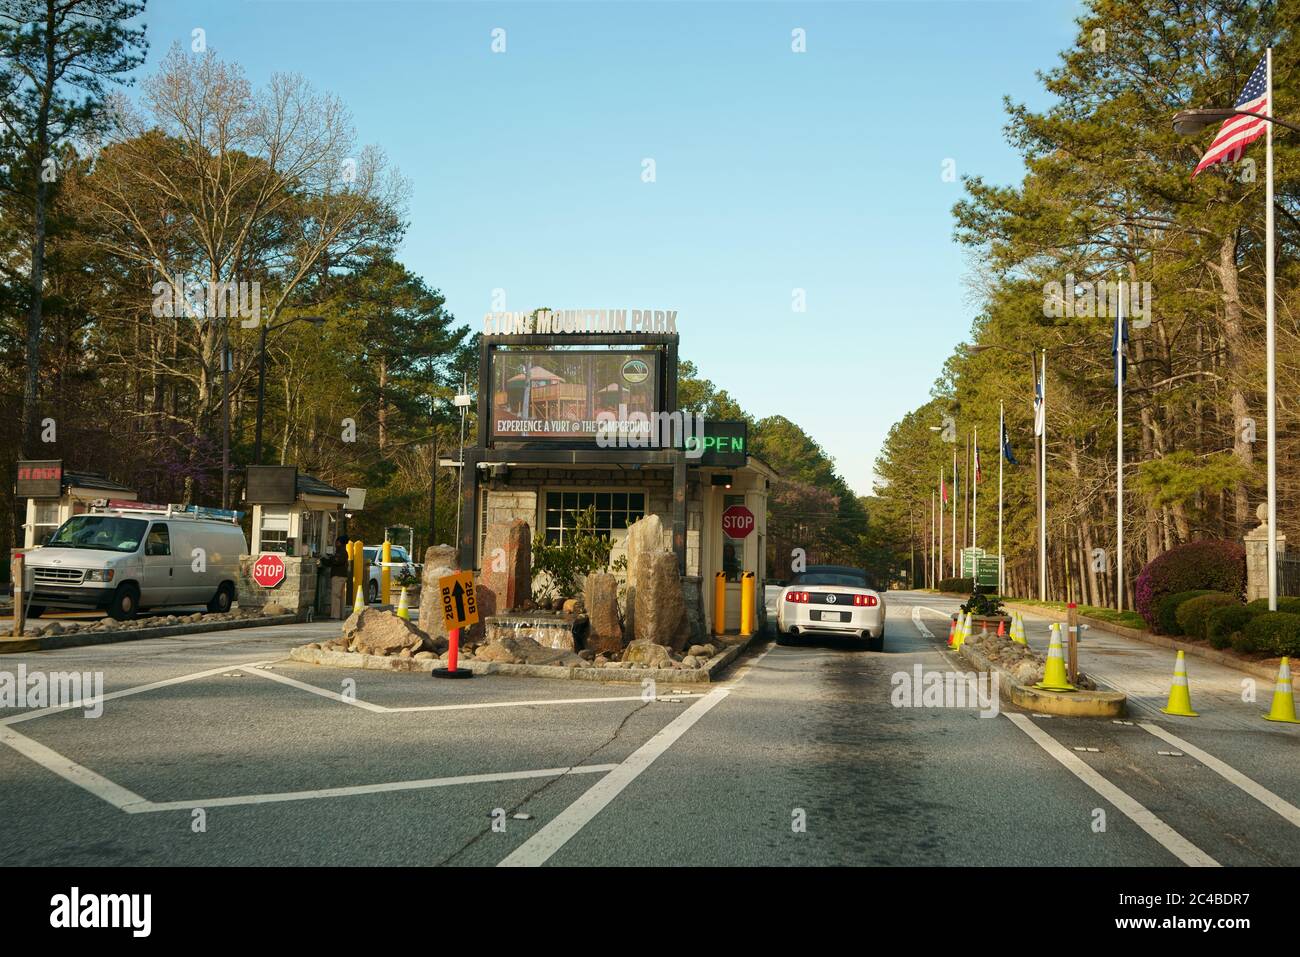 STONE MOUNTAIN, GEORGIA, USA - 19 MARZO 2019: Ingresso cancello del parco di Stone Mountain. Attrazione turistica vicino ad Atlanta, Georgia, USA. Foto Stock